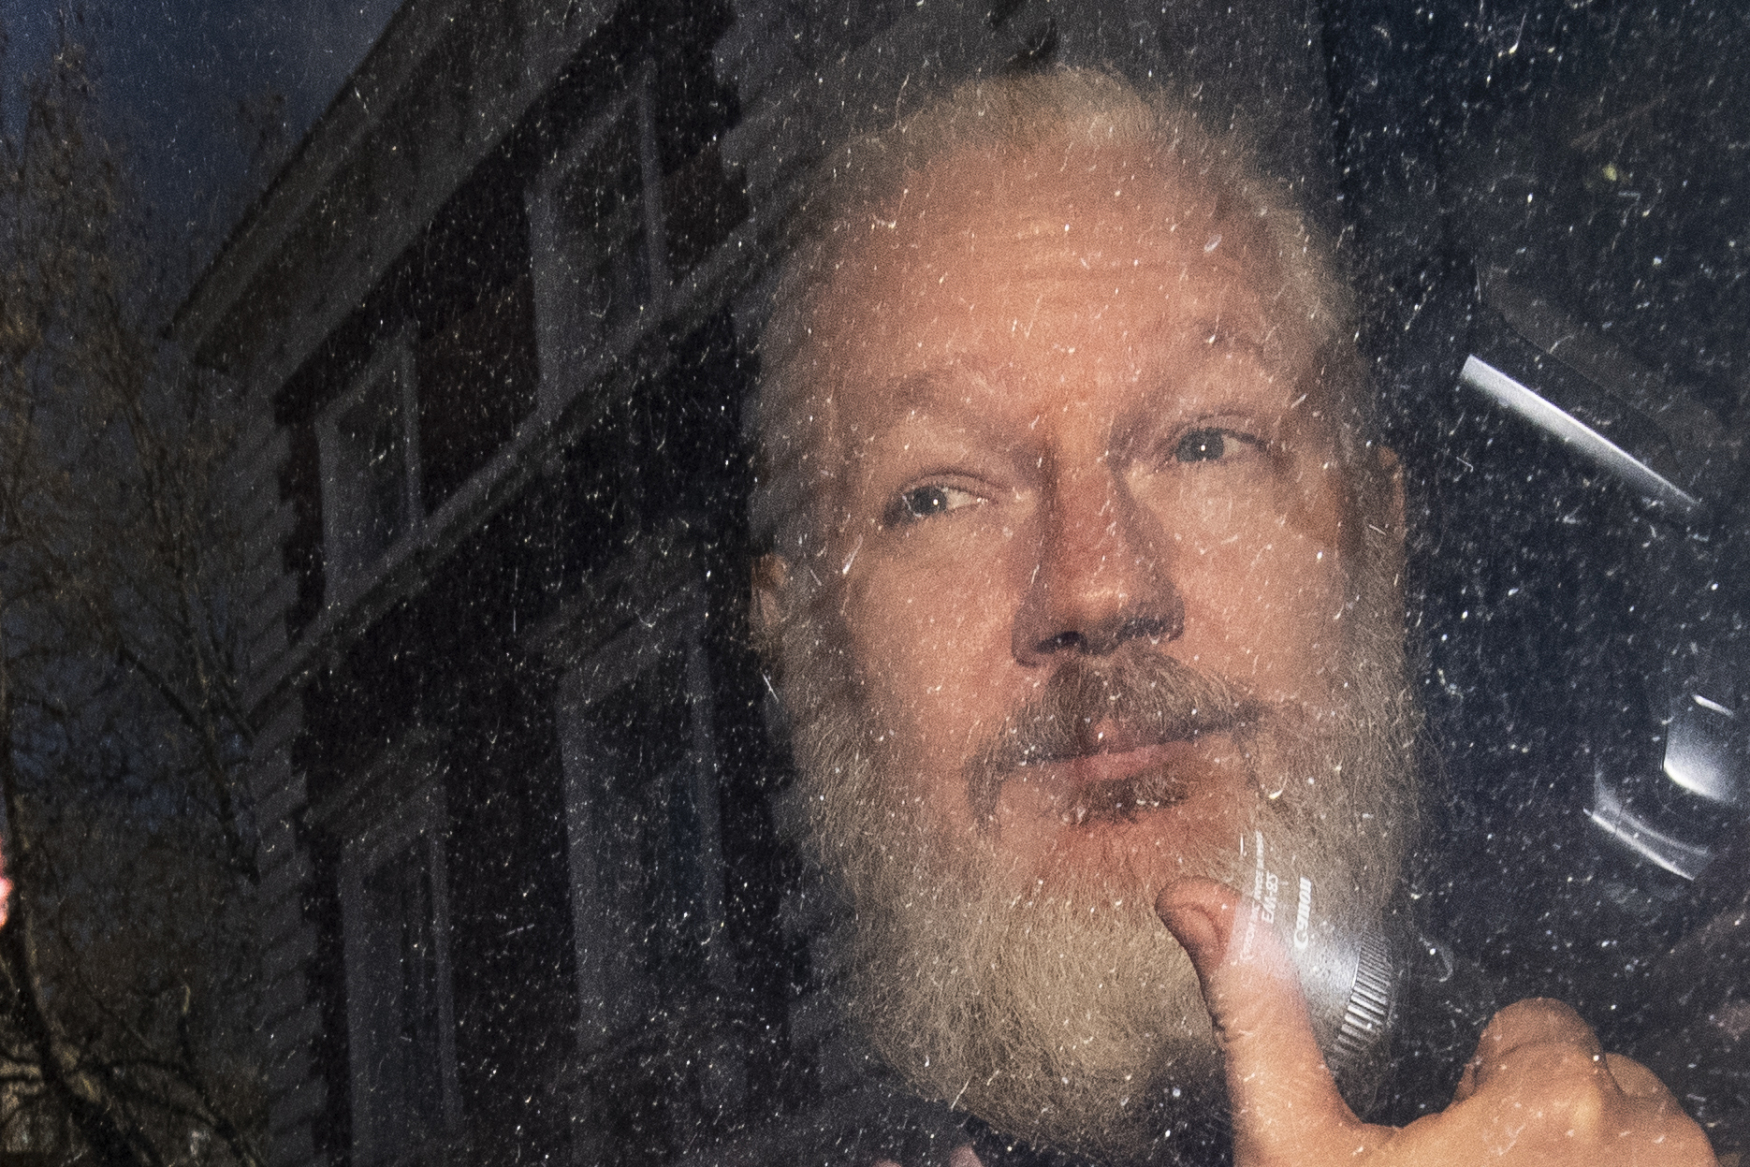 Julian Assange byl zatčen na ekvádorském velvyslanectví v Londýně.